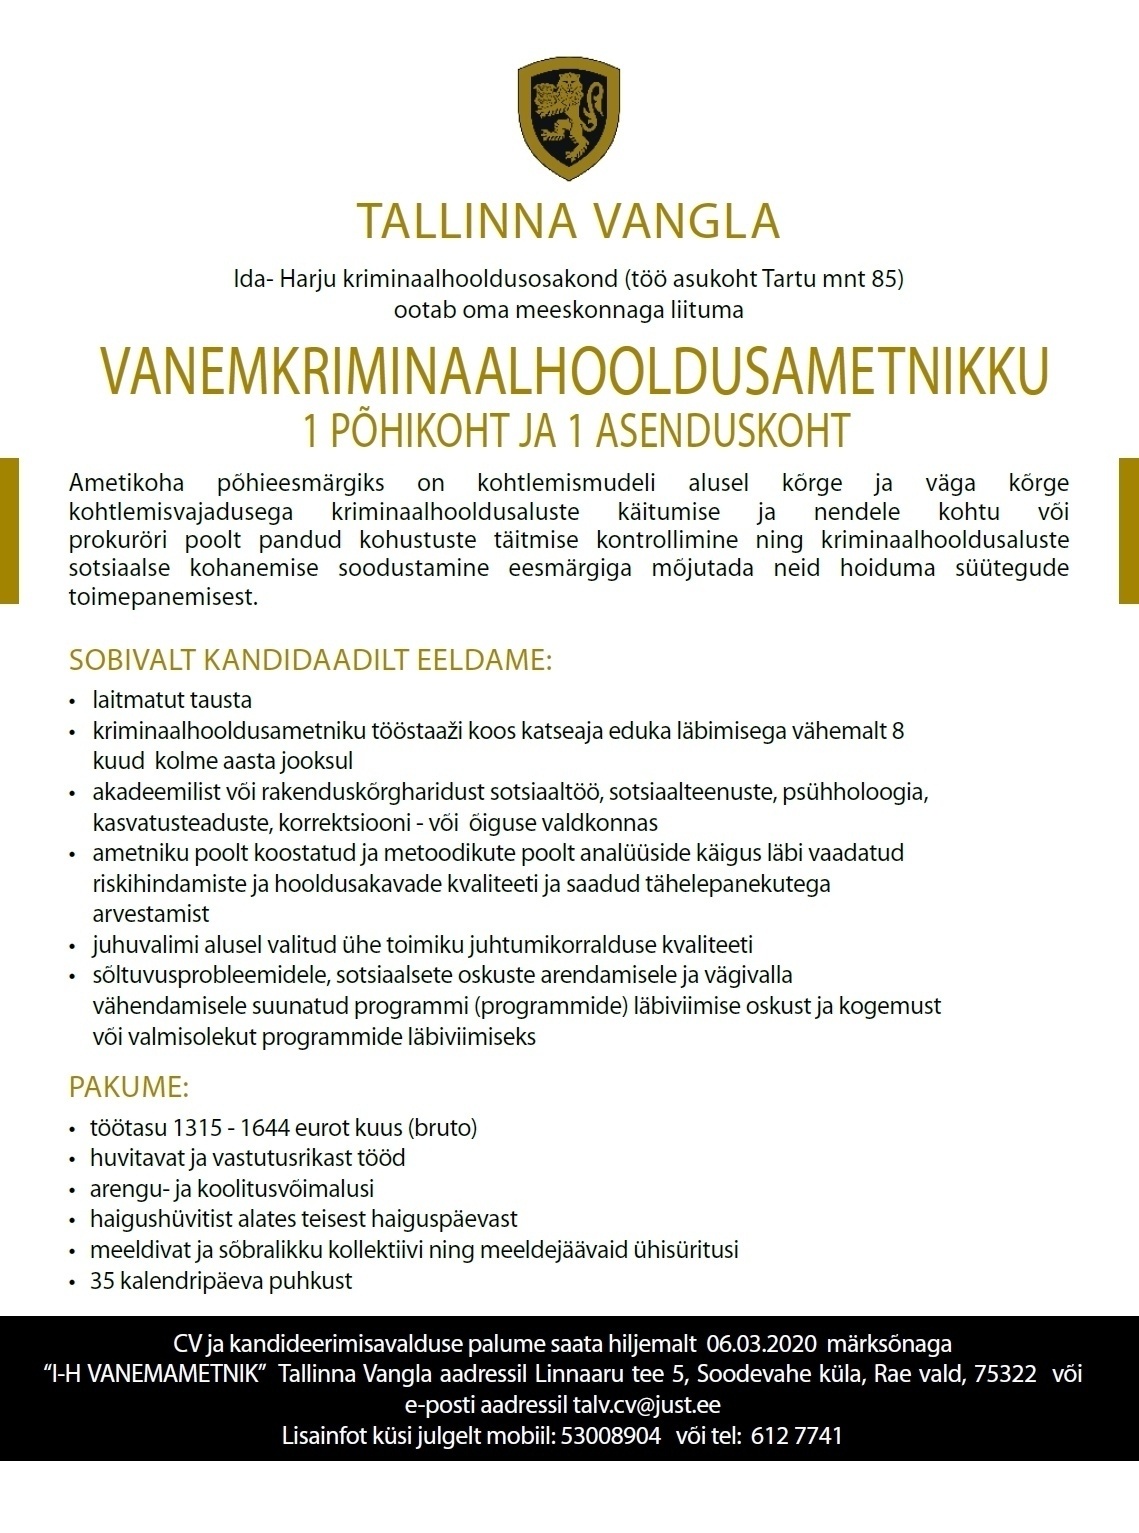 Tallinna Vangla Ida-Harju Kriminaalhooldusosakonna vanemkriminaalhooldusametnik